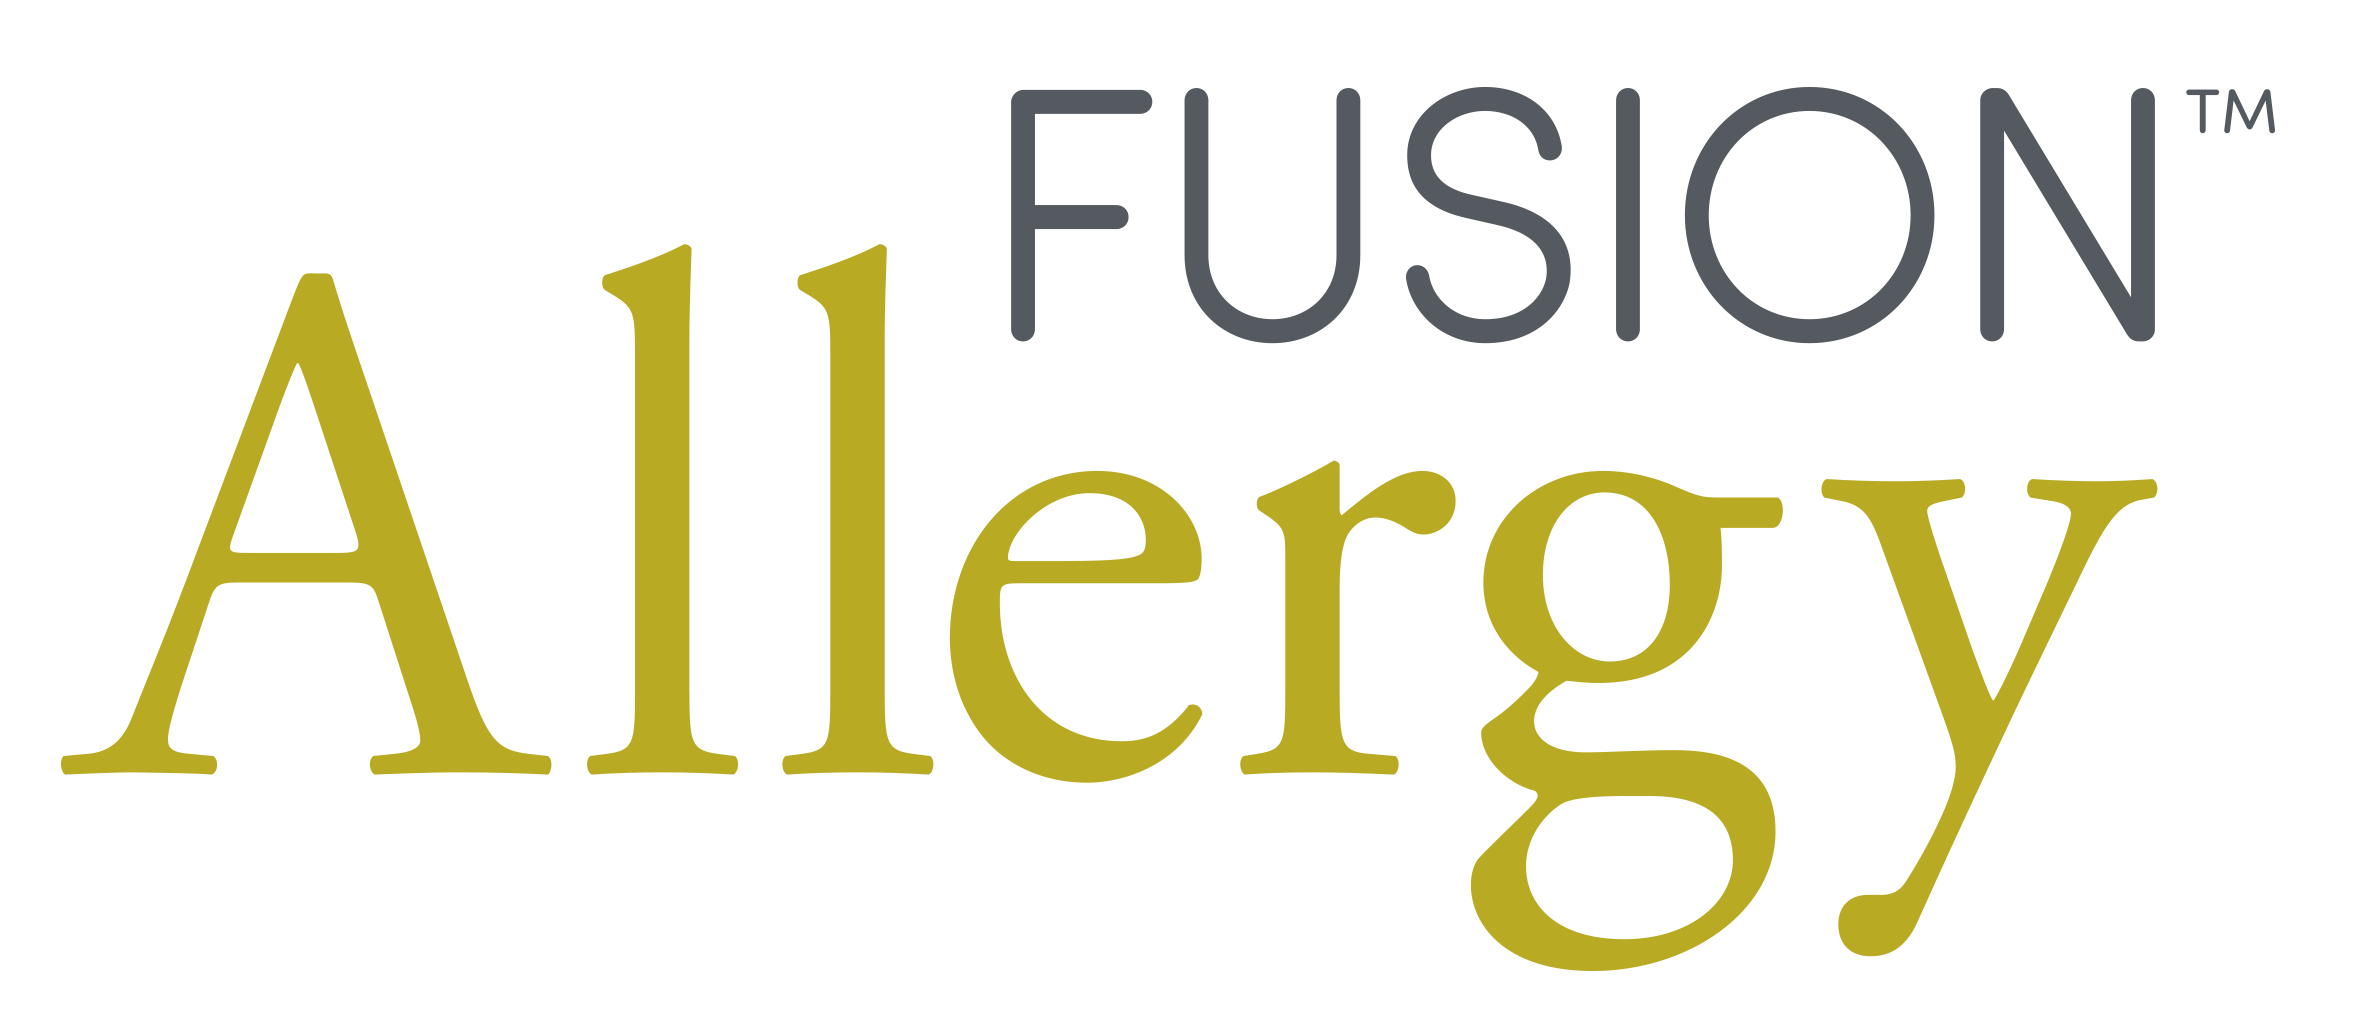 Fusion Allergy Logo (005) - Copy